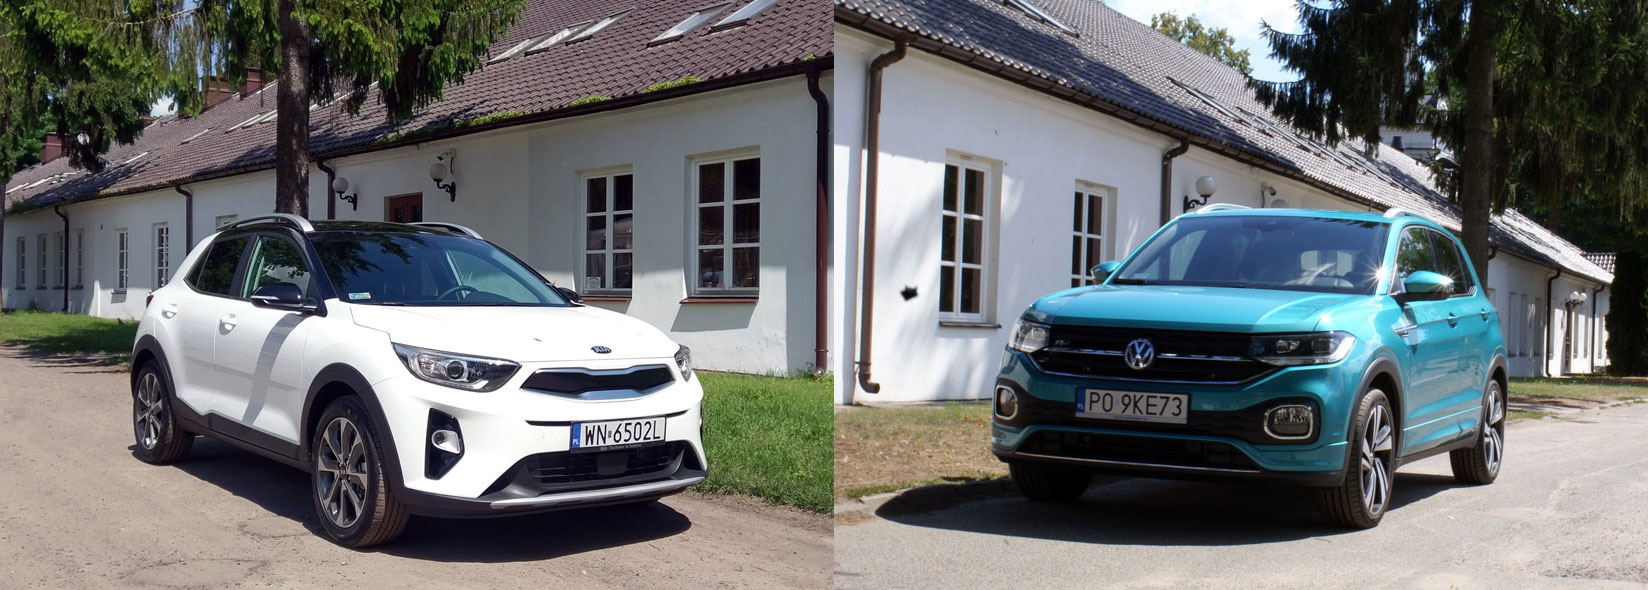 TEST: Kia Stonic vs VW T-Cross